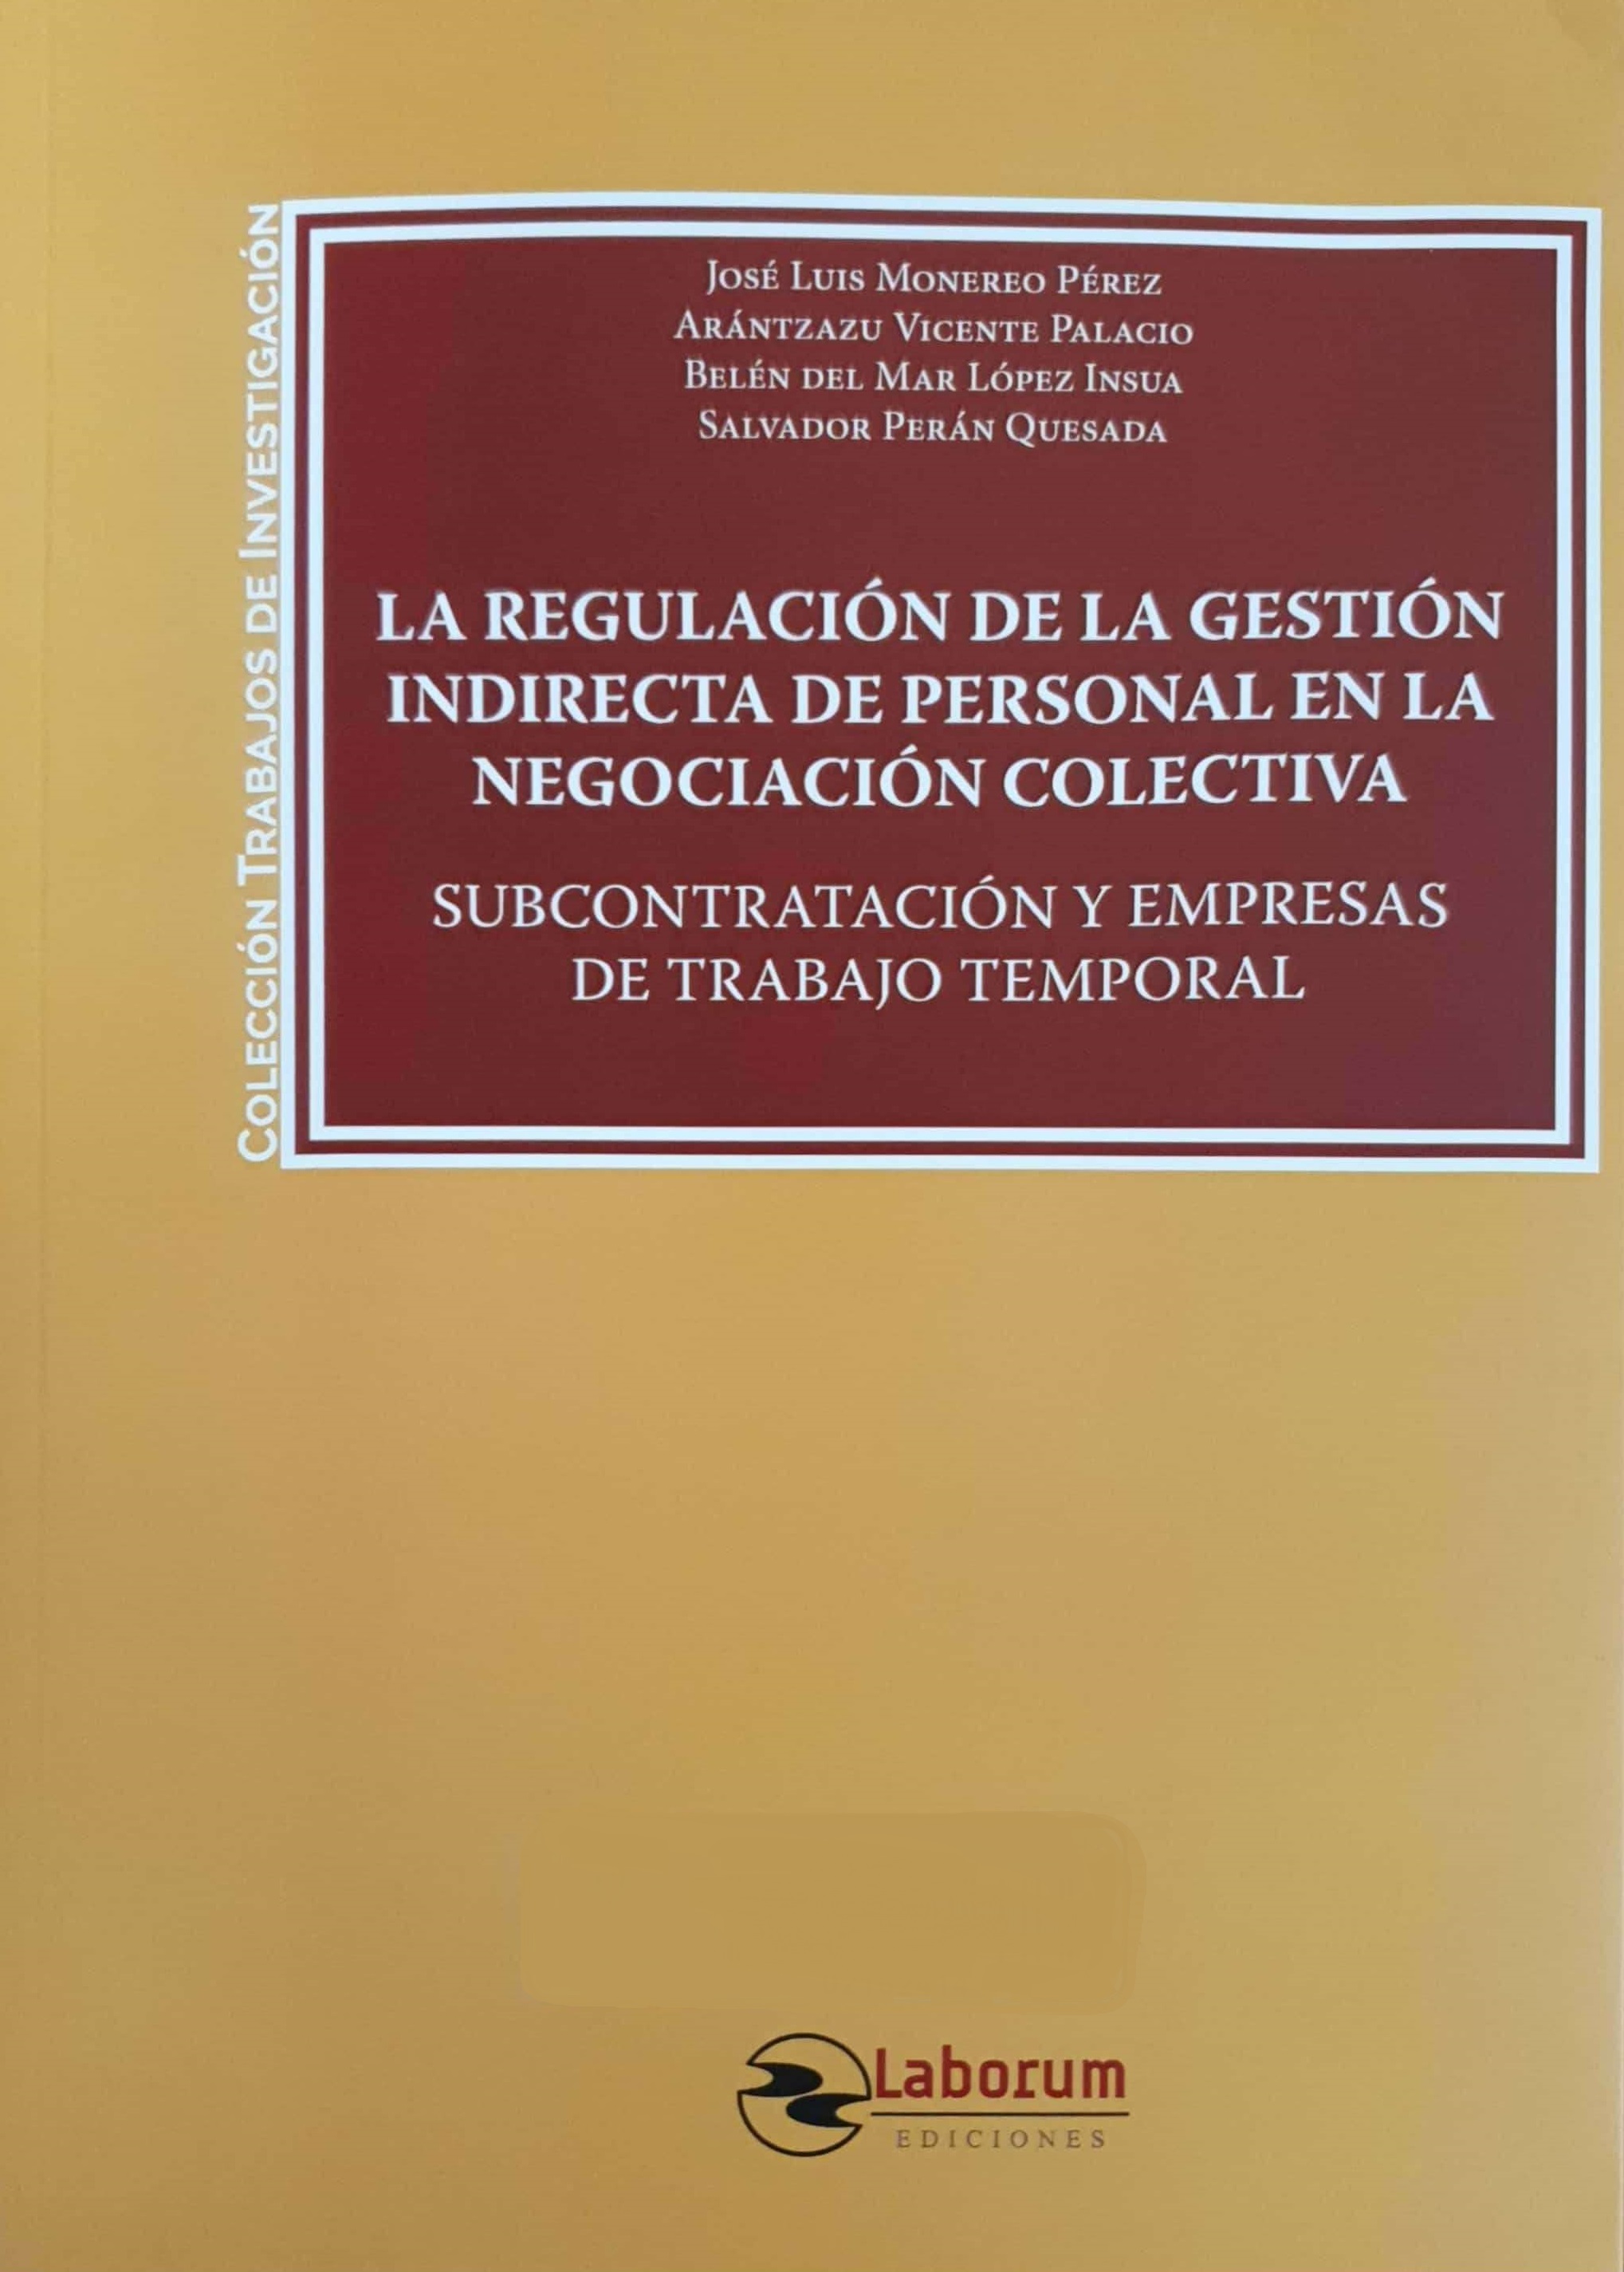 Imagen de portada del libro La regulación de la gestión indirecta de personal en la negociación colectiva